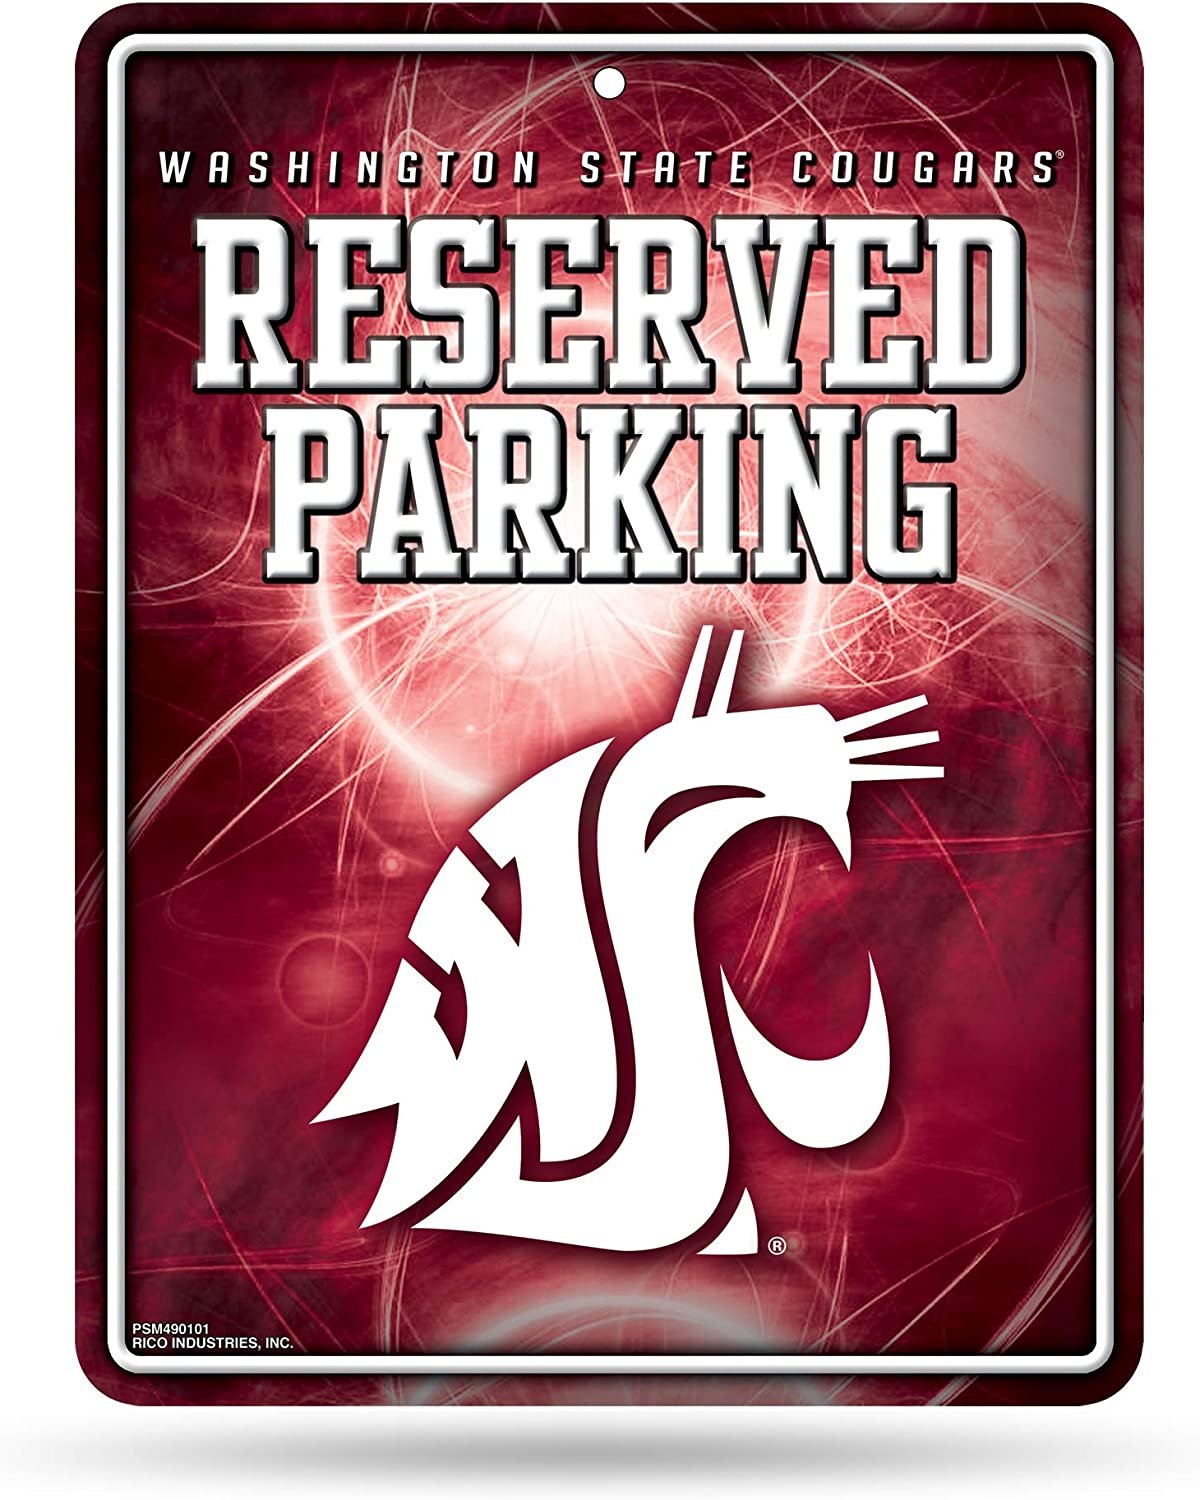 Washington State Cougars Metal Parking Sign University of